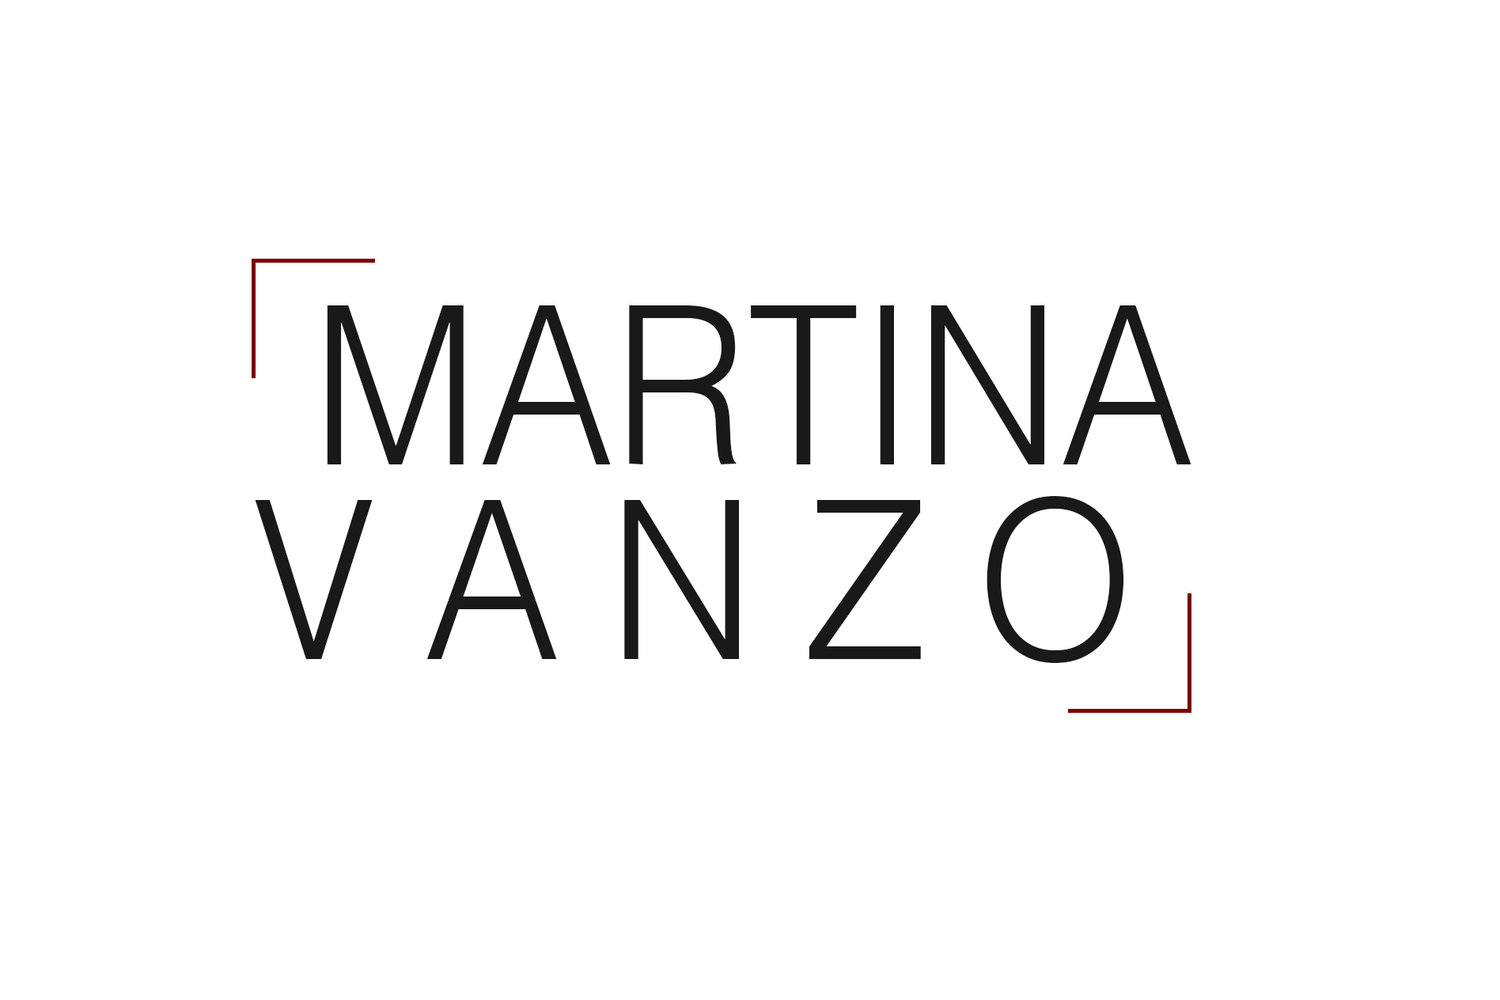 Martina Vanzo